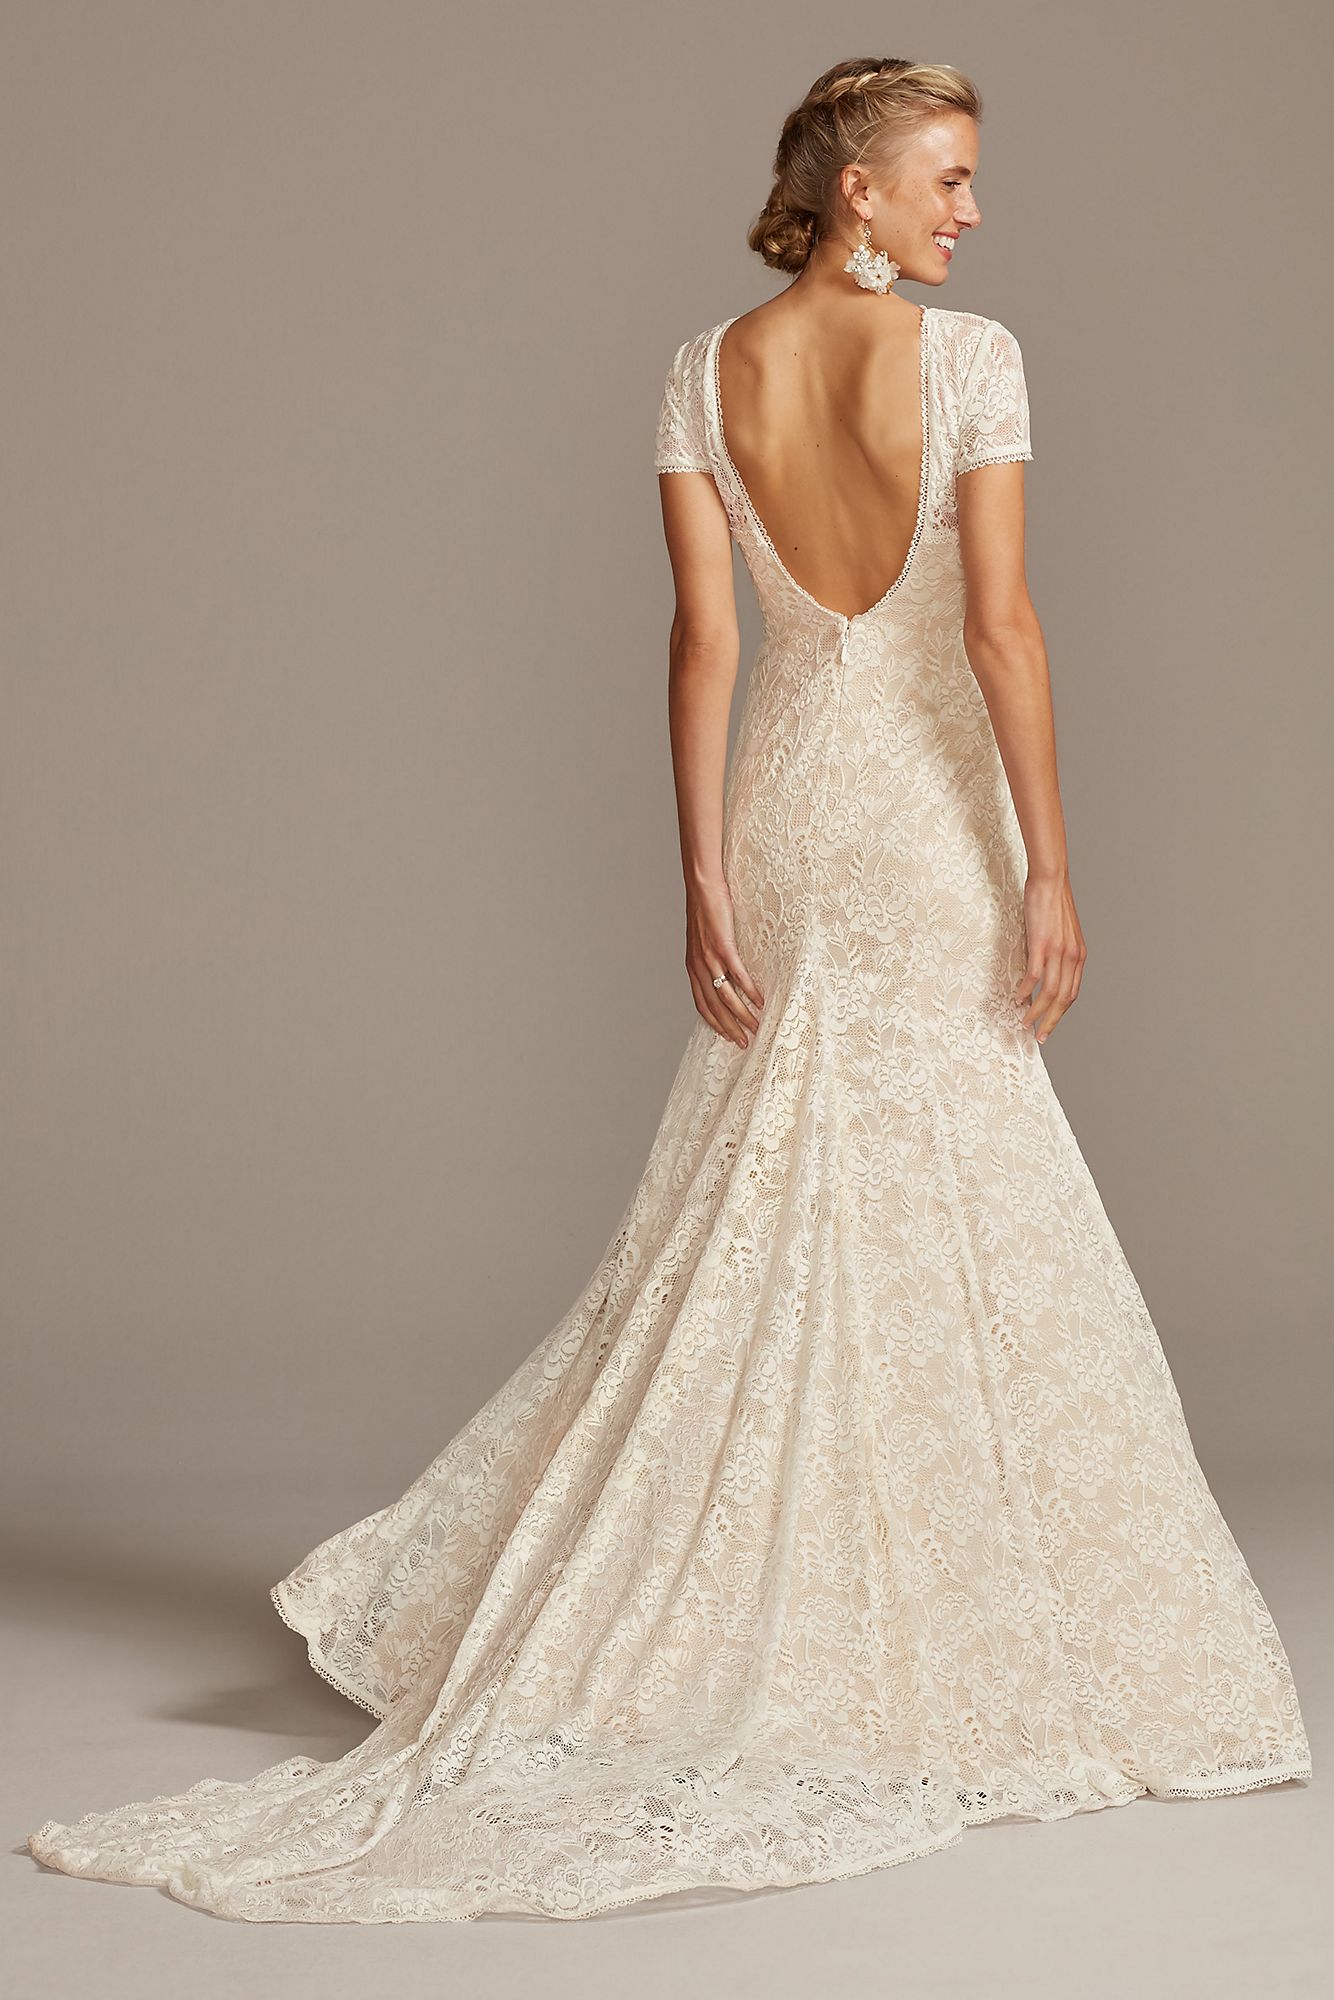 Elegant MS161216 Style Short Sleeve Low Back Lace Wedding Dress